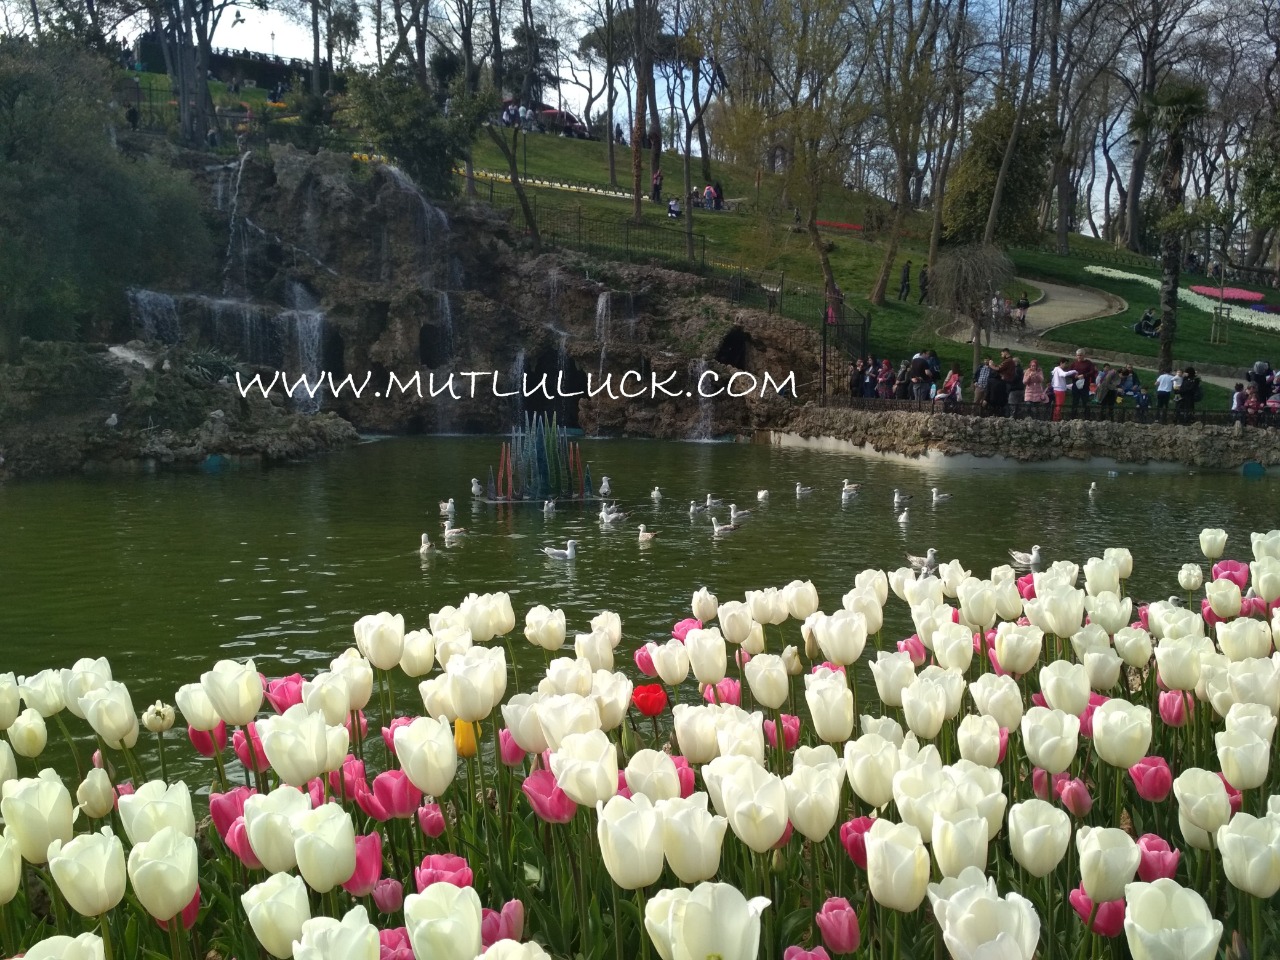 Menuruni Taman Emirgan, terdapat danau kecil lengkap dengan angsa, burung dan bunga tulip